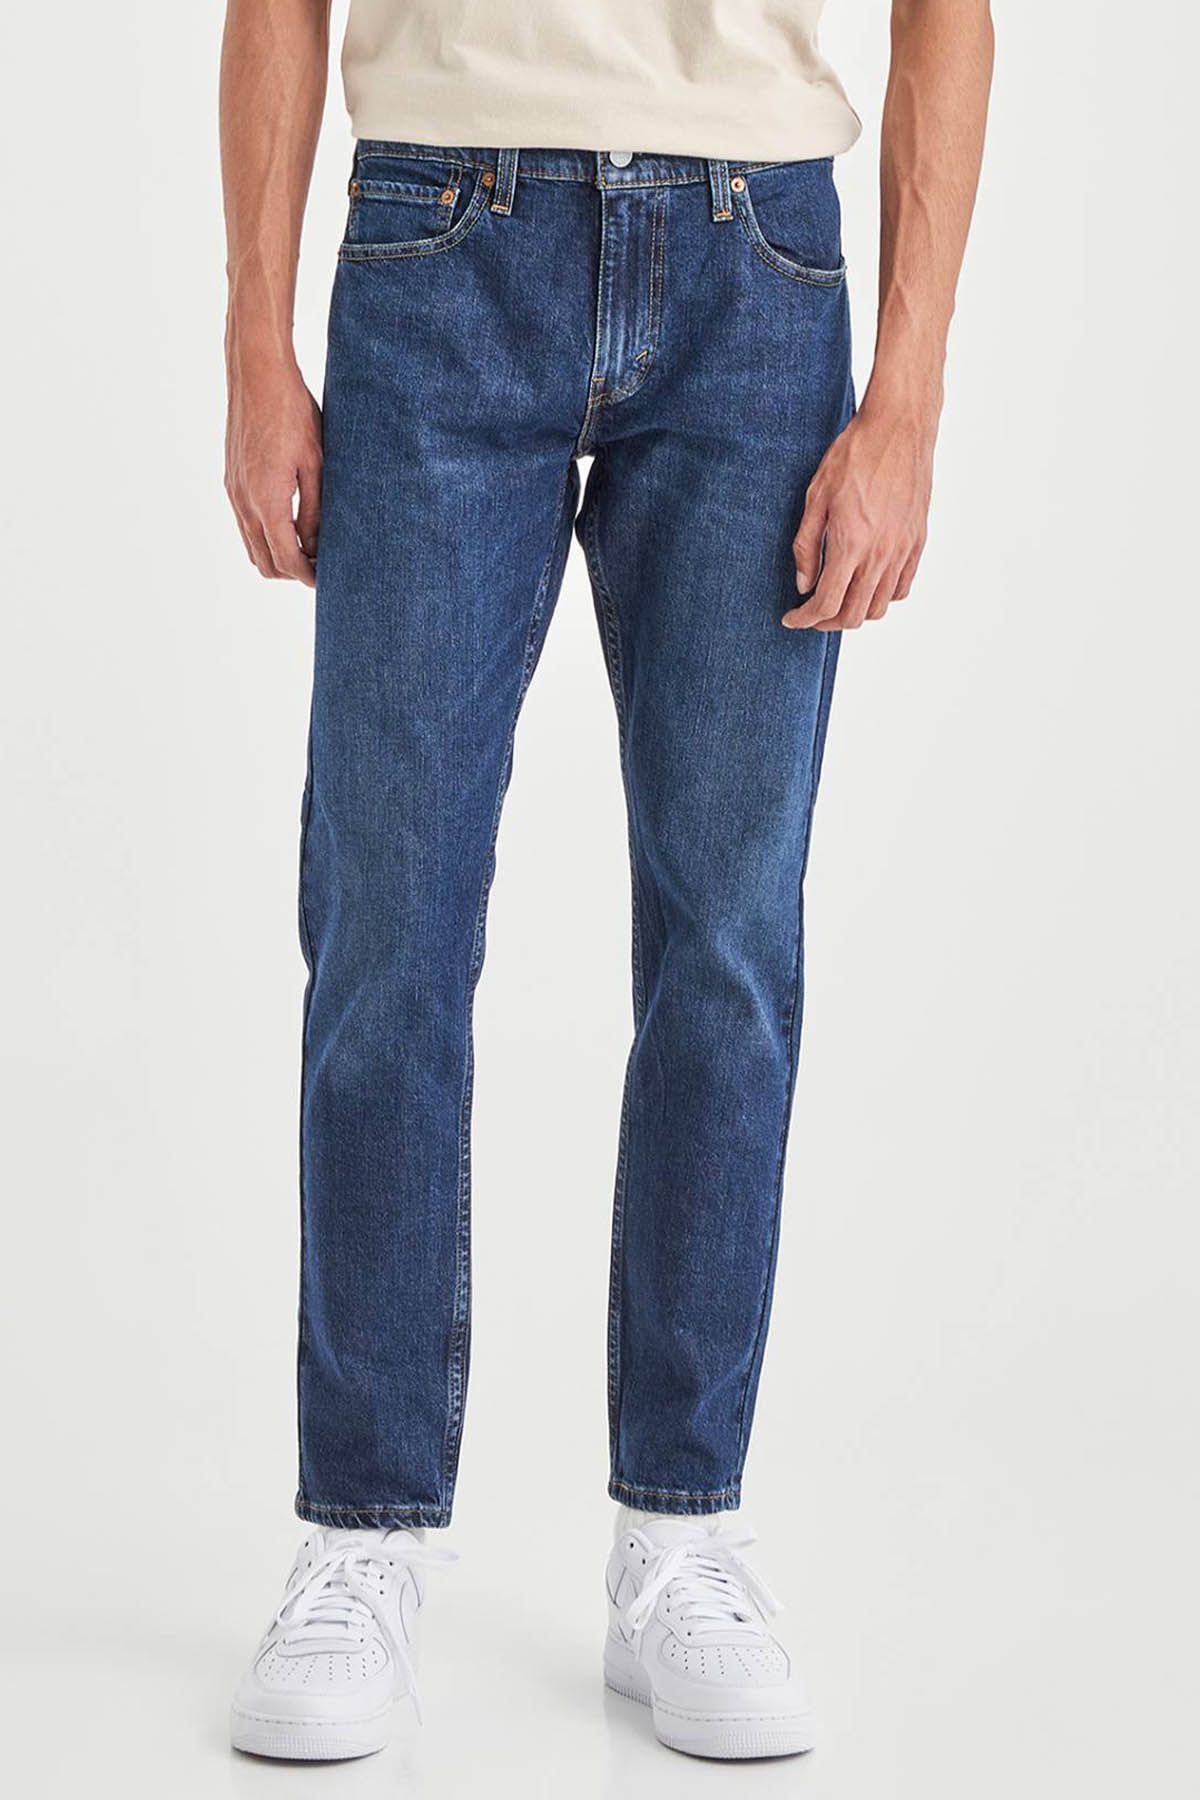 Levi's ® Levi's Men's 512 Slim Taper Jeans Dark Indigo Men Jeans